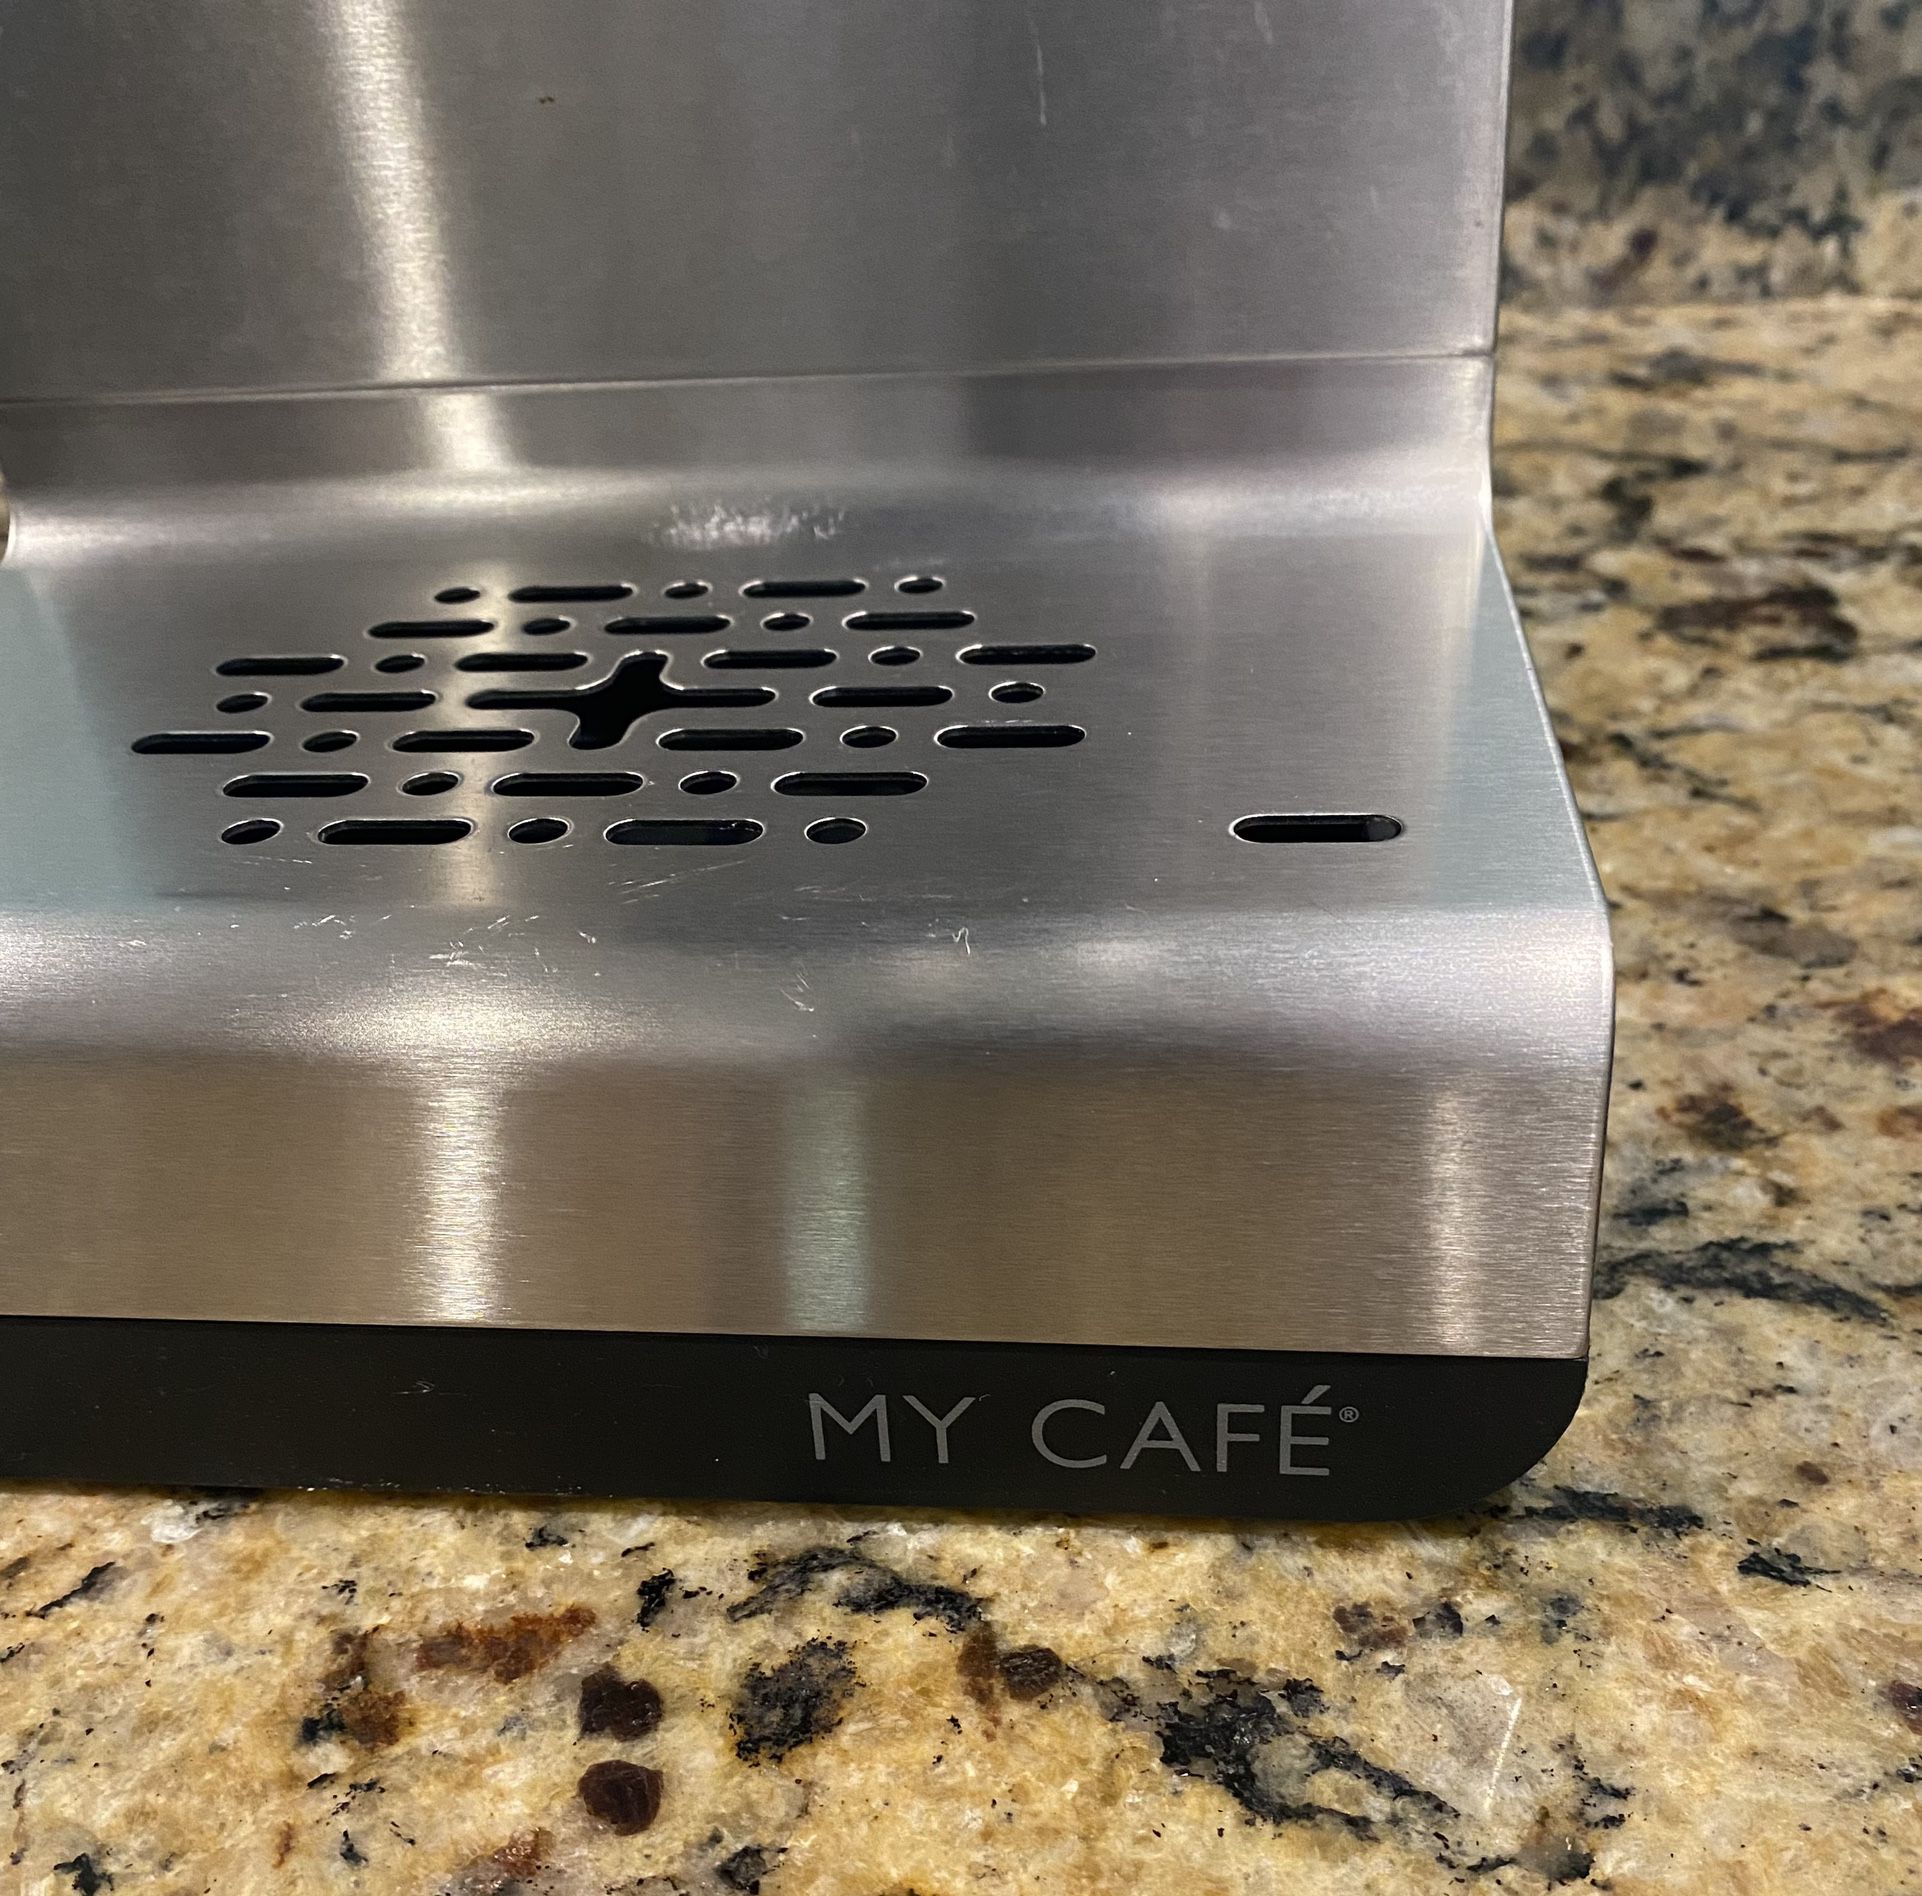 Ninja Programmable XL 14-Cup Coffee Maker PRO for Sale in Boise, ID -  OfferUp